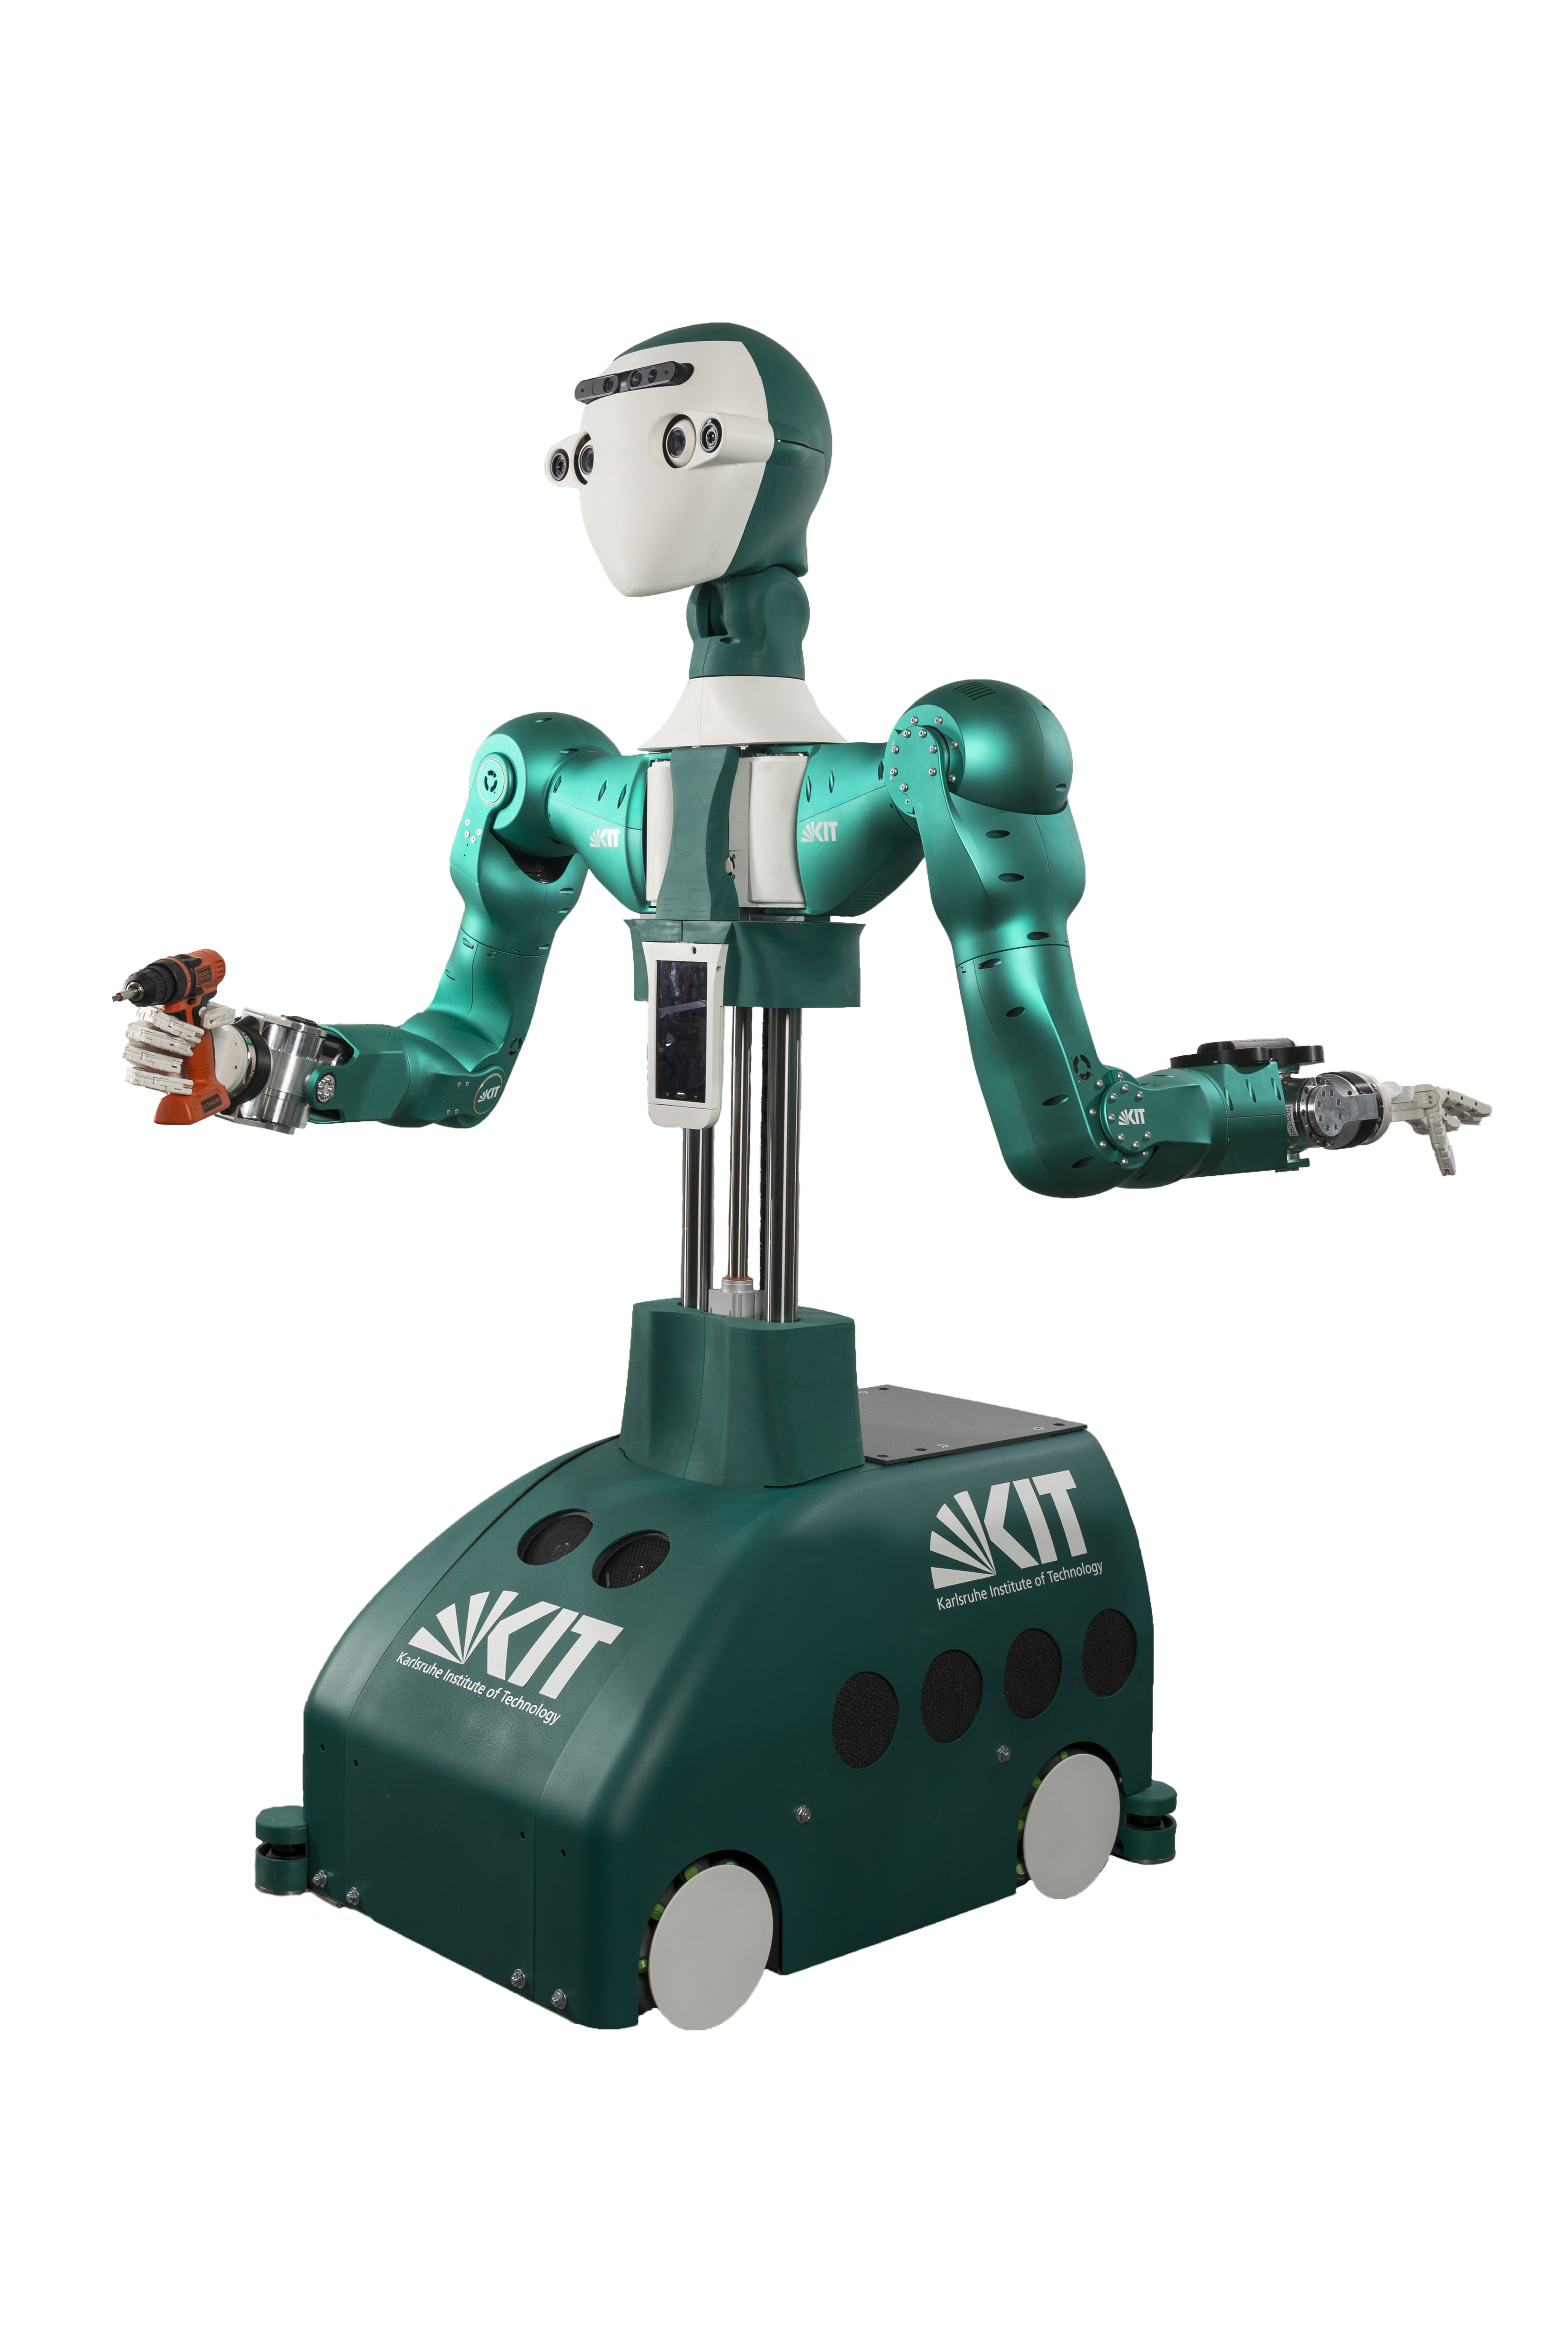 Humanoider Roboter Armar 6